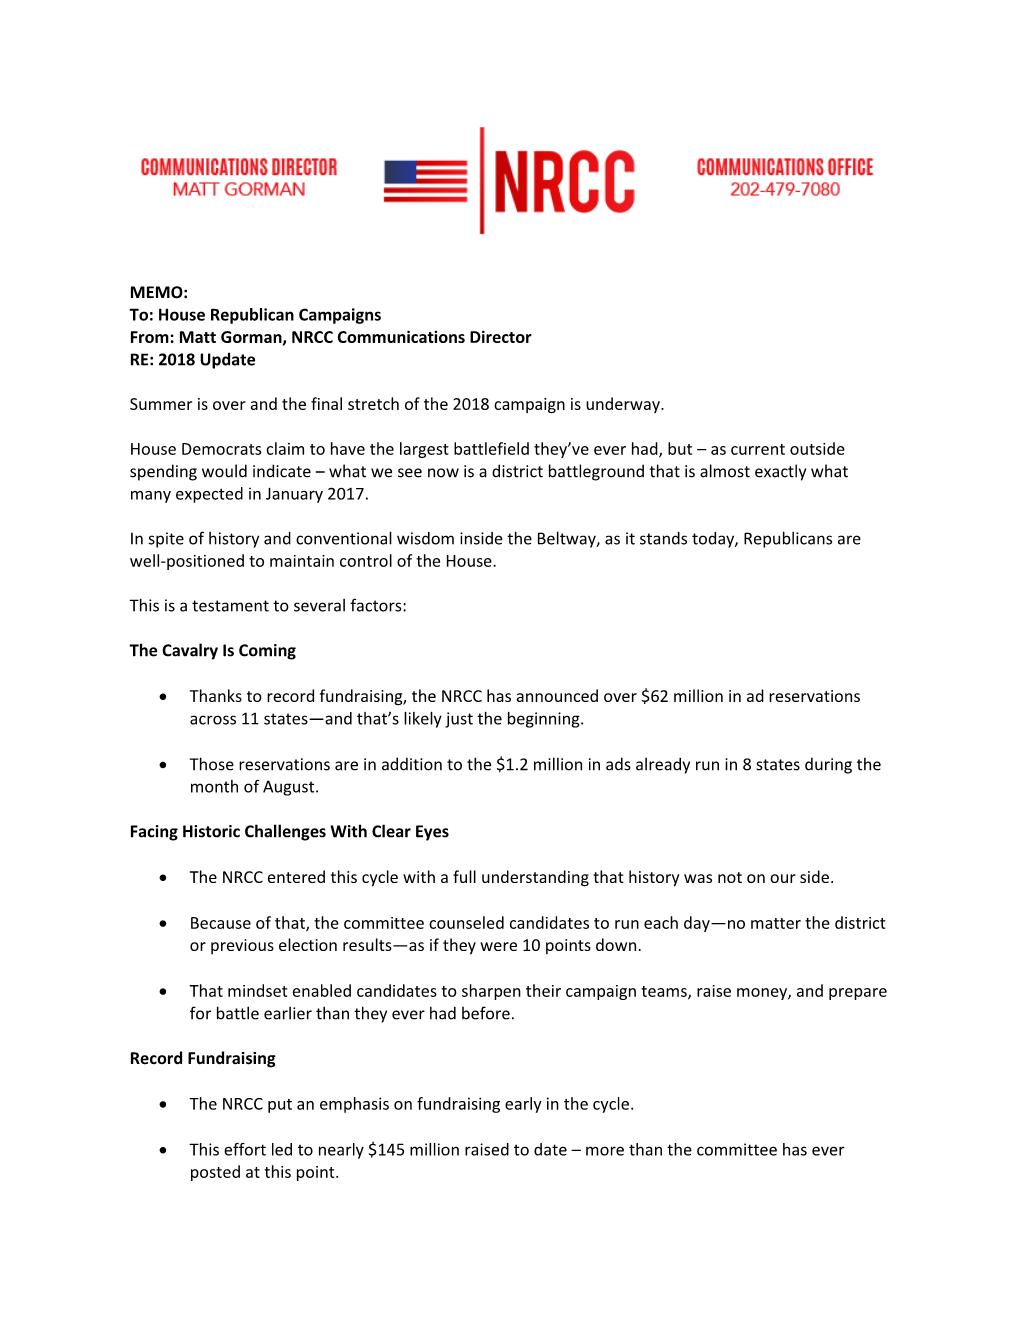 Matt Gorman, NRCC Communications Director RE: 2018 Update